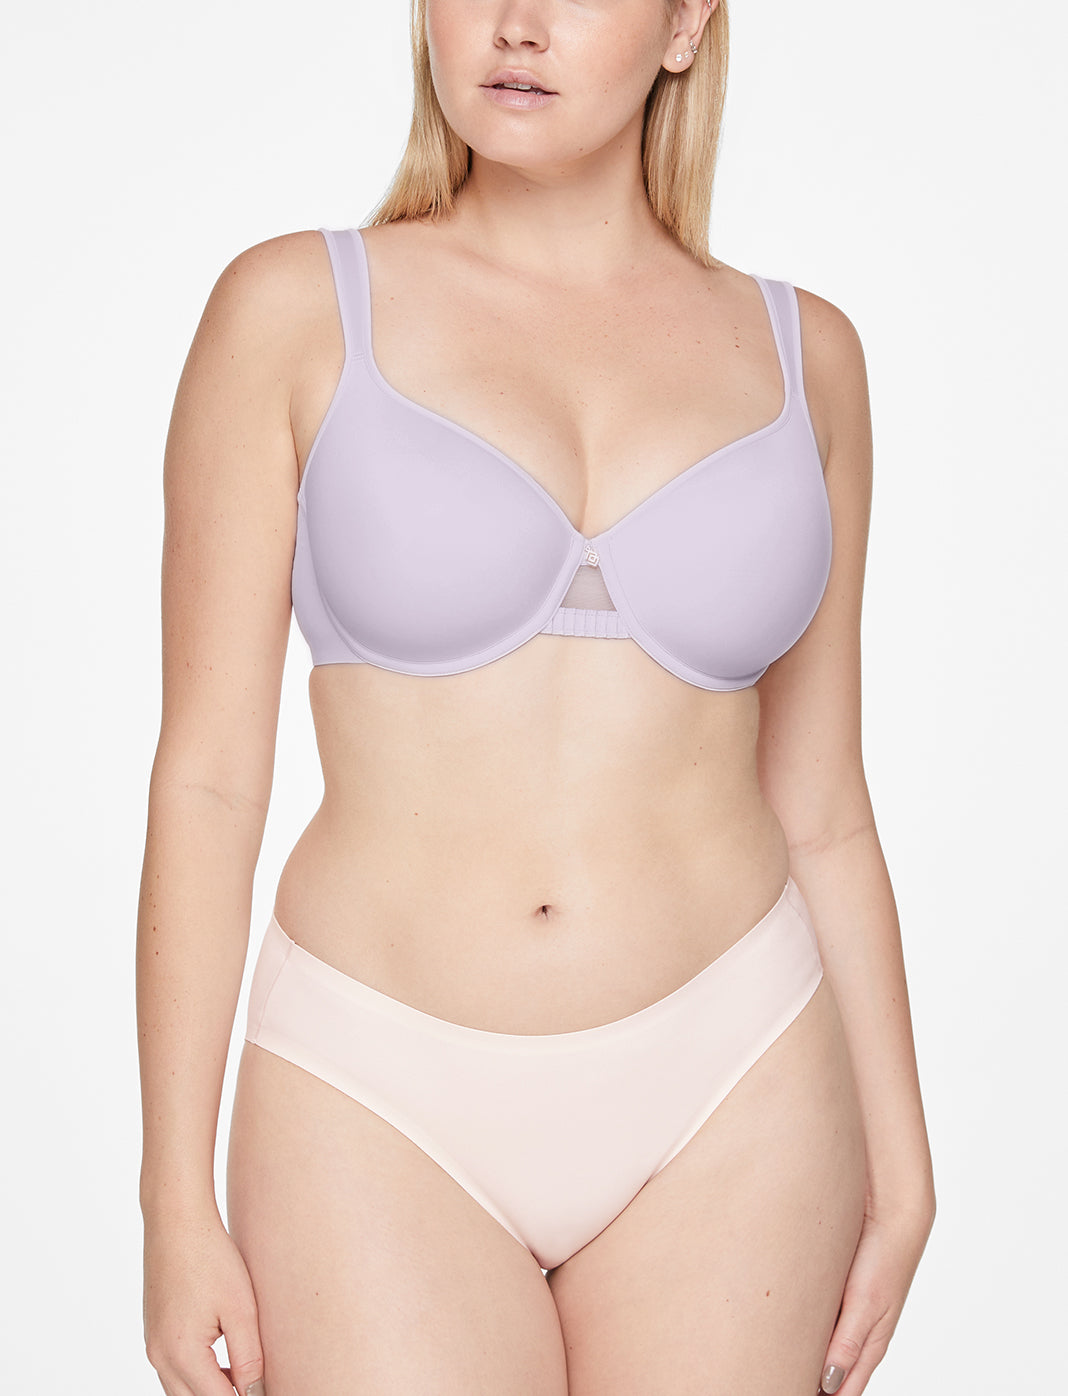 Wholesale 38e bra For Supportive Underwear 